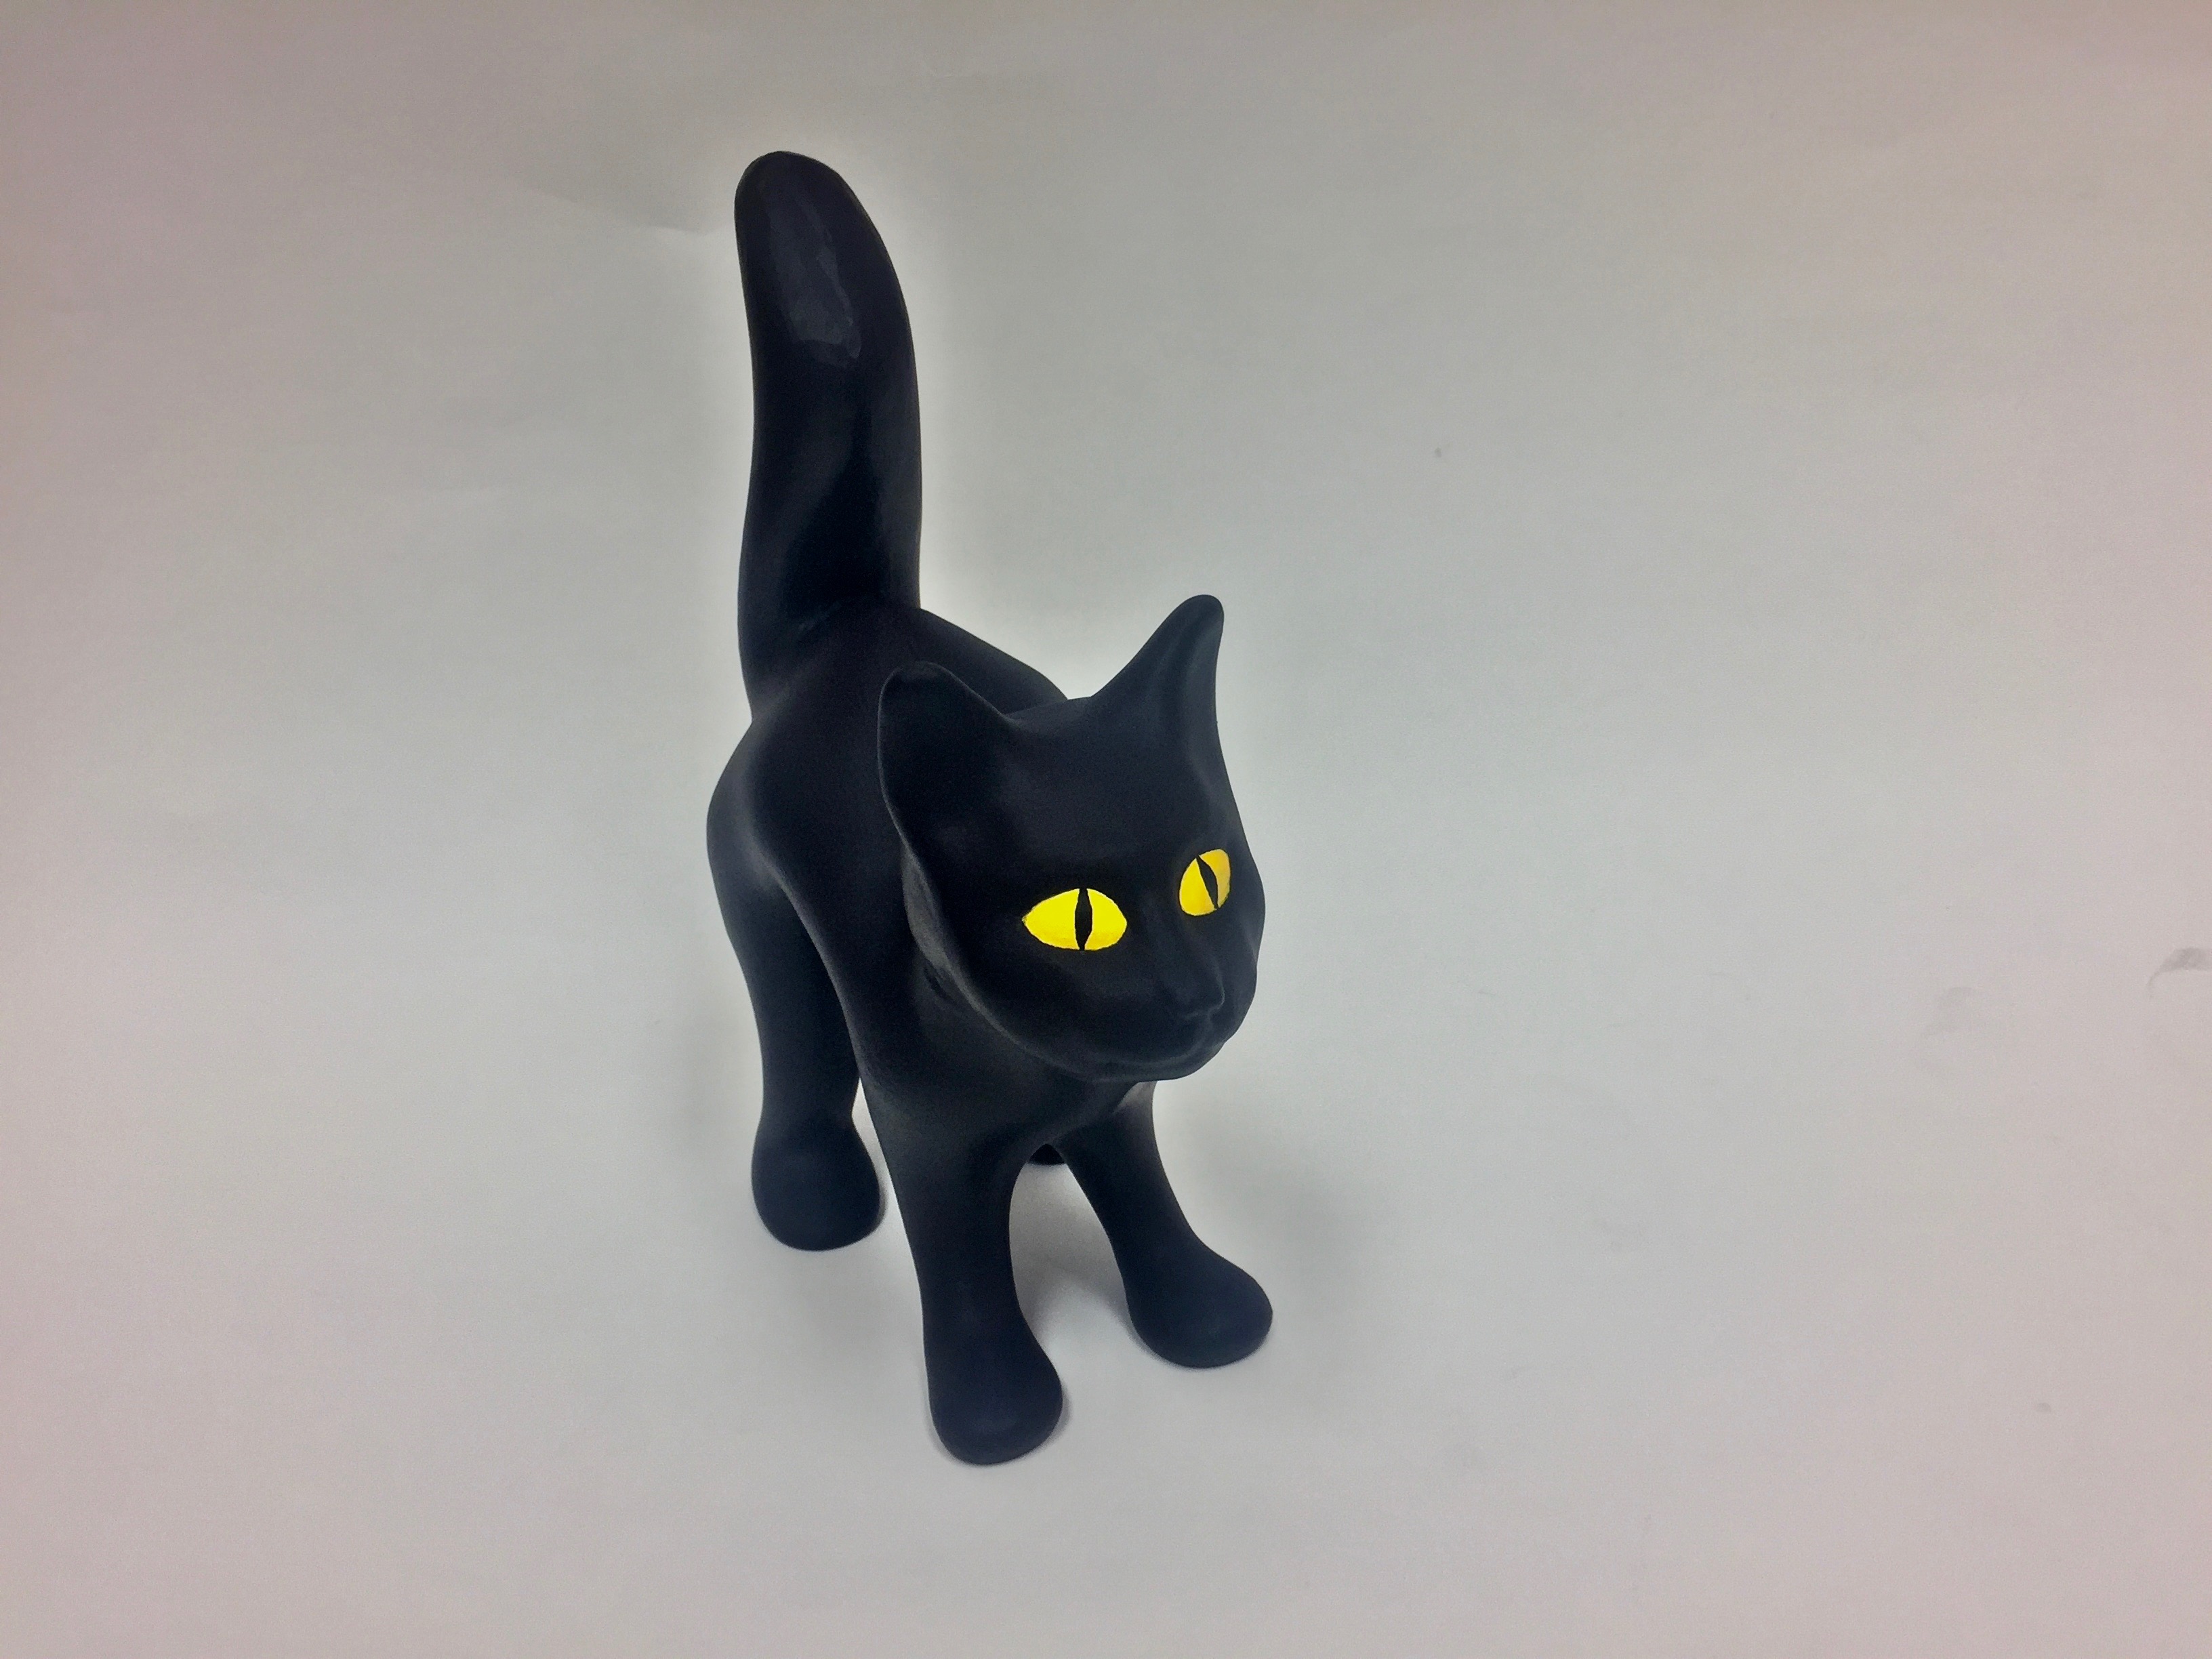 The 3D Printed Black Cat